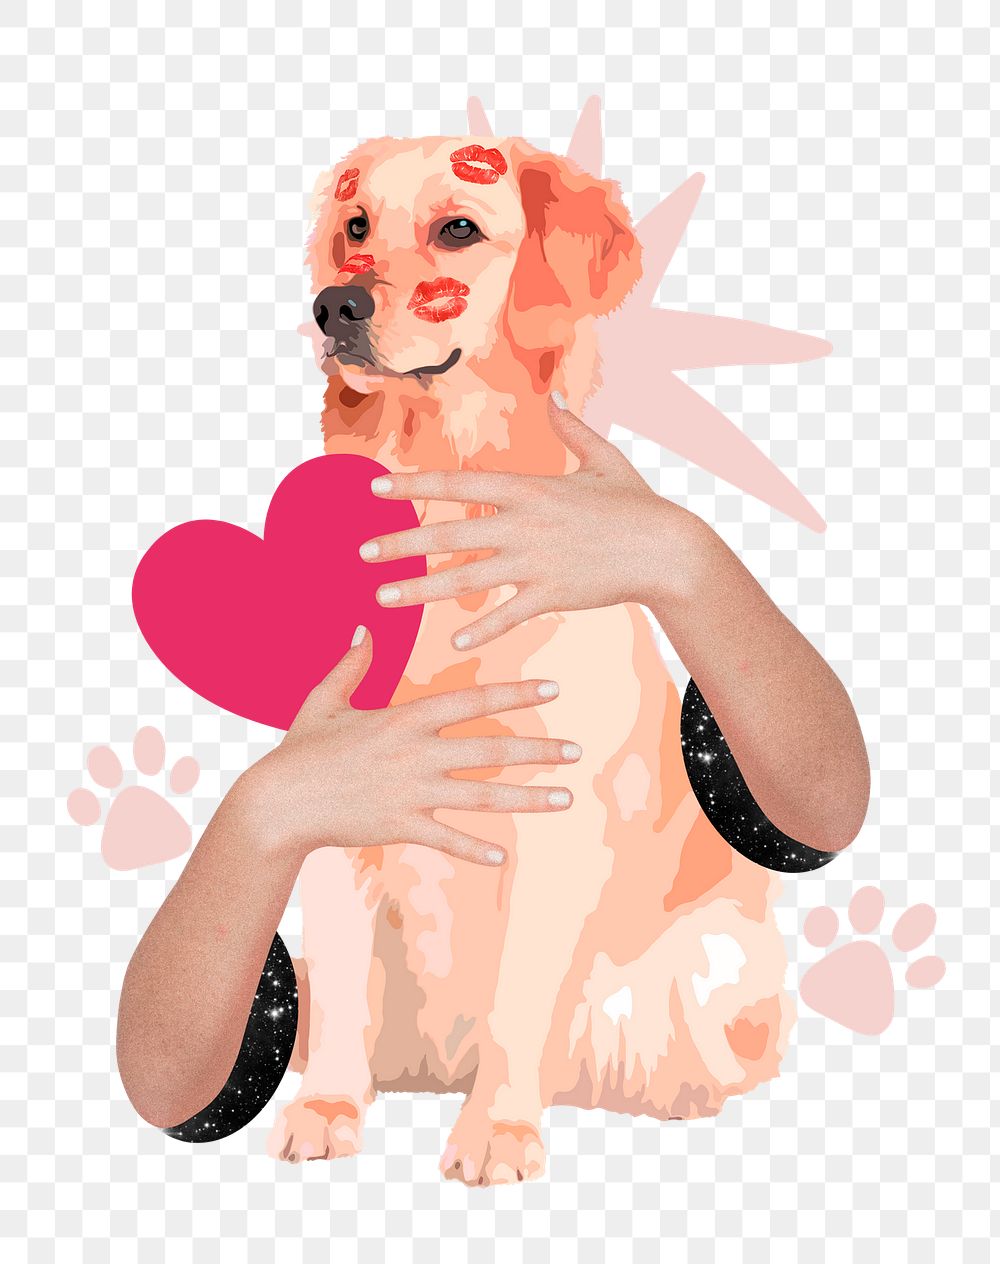 Dog lover png sticker, hands hugging animal remix, transparent background